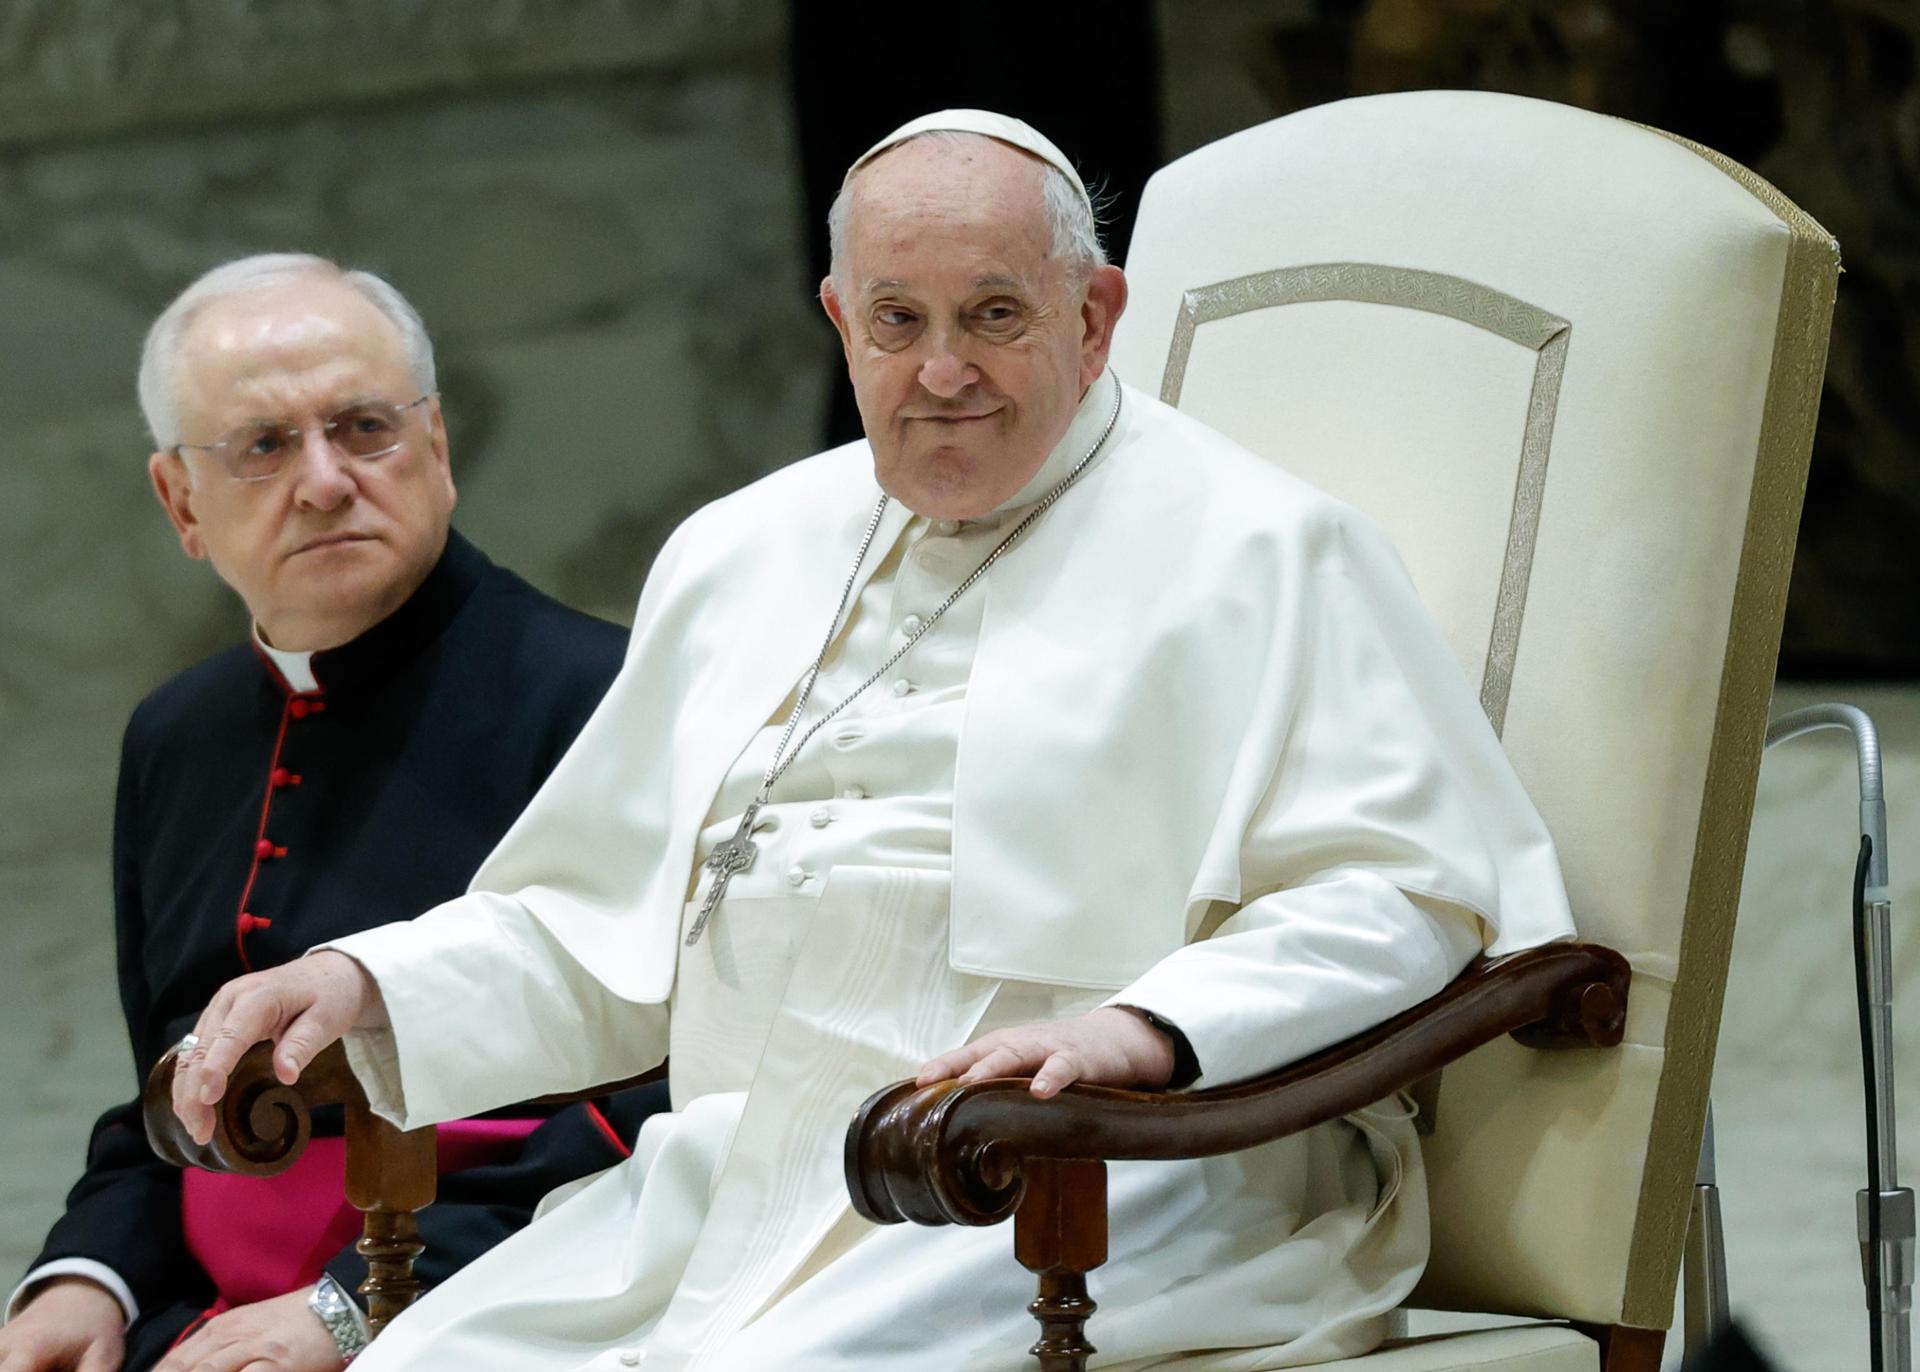 Vaticano confirma buen estado de salud del papa Francisco